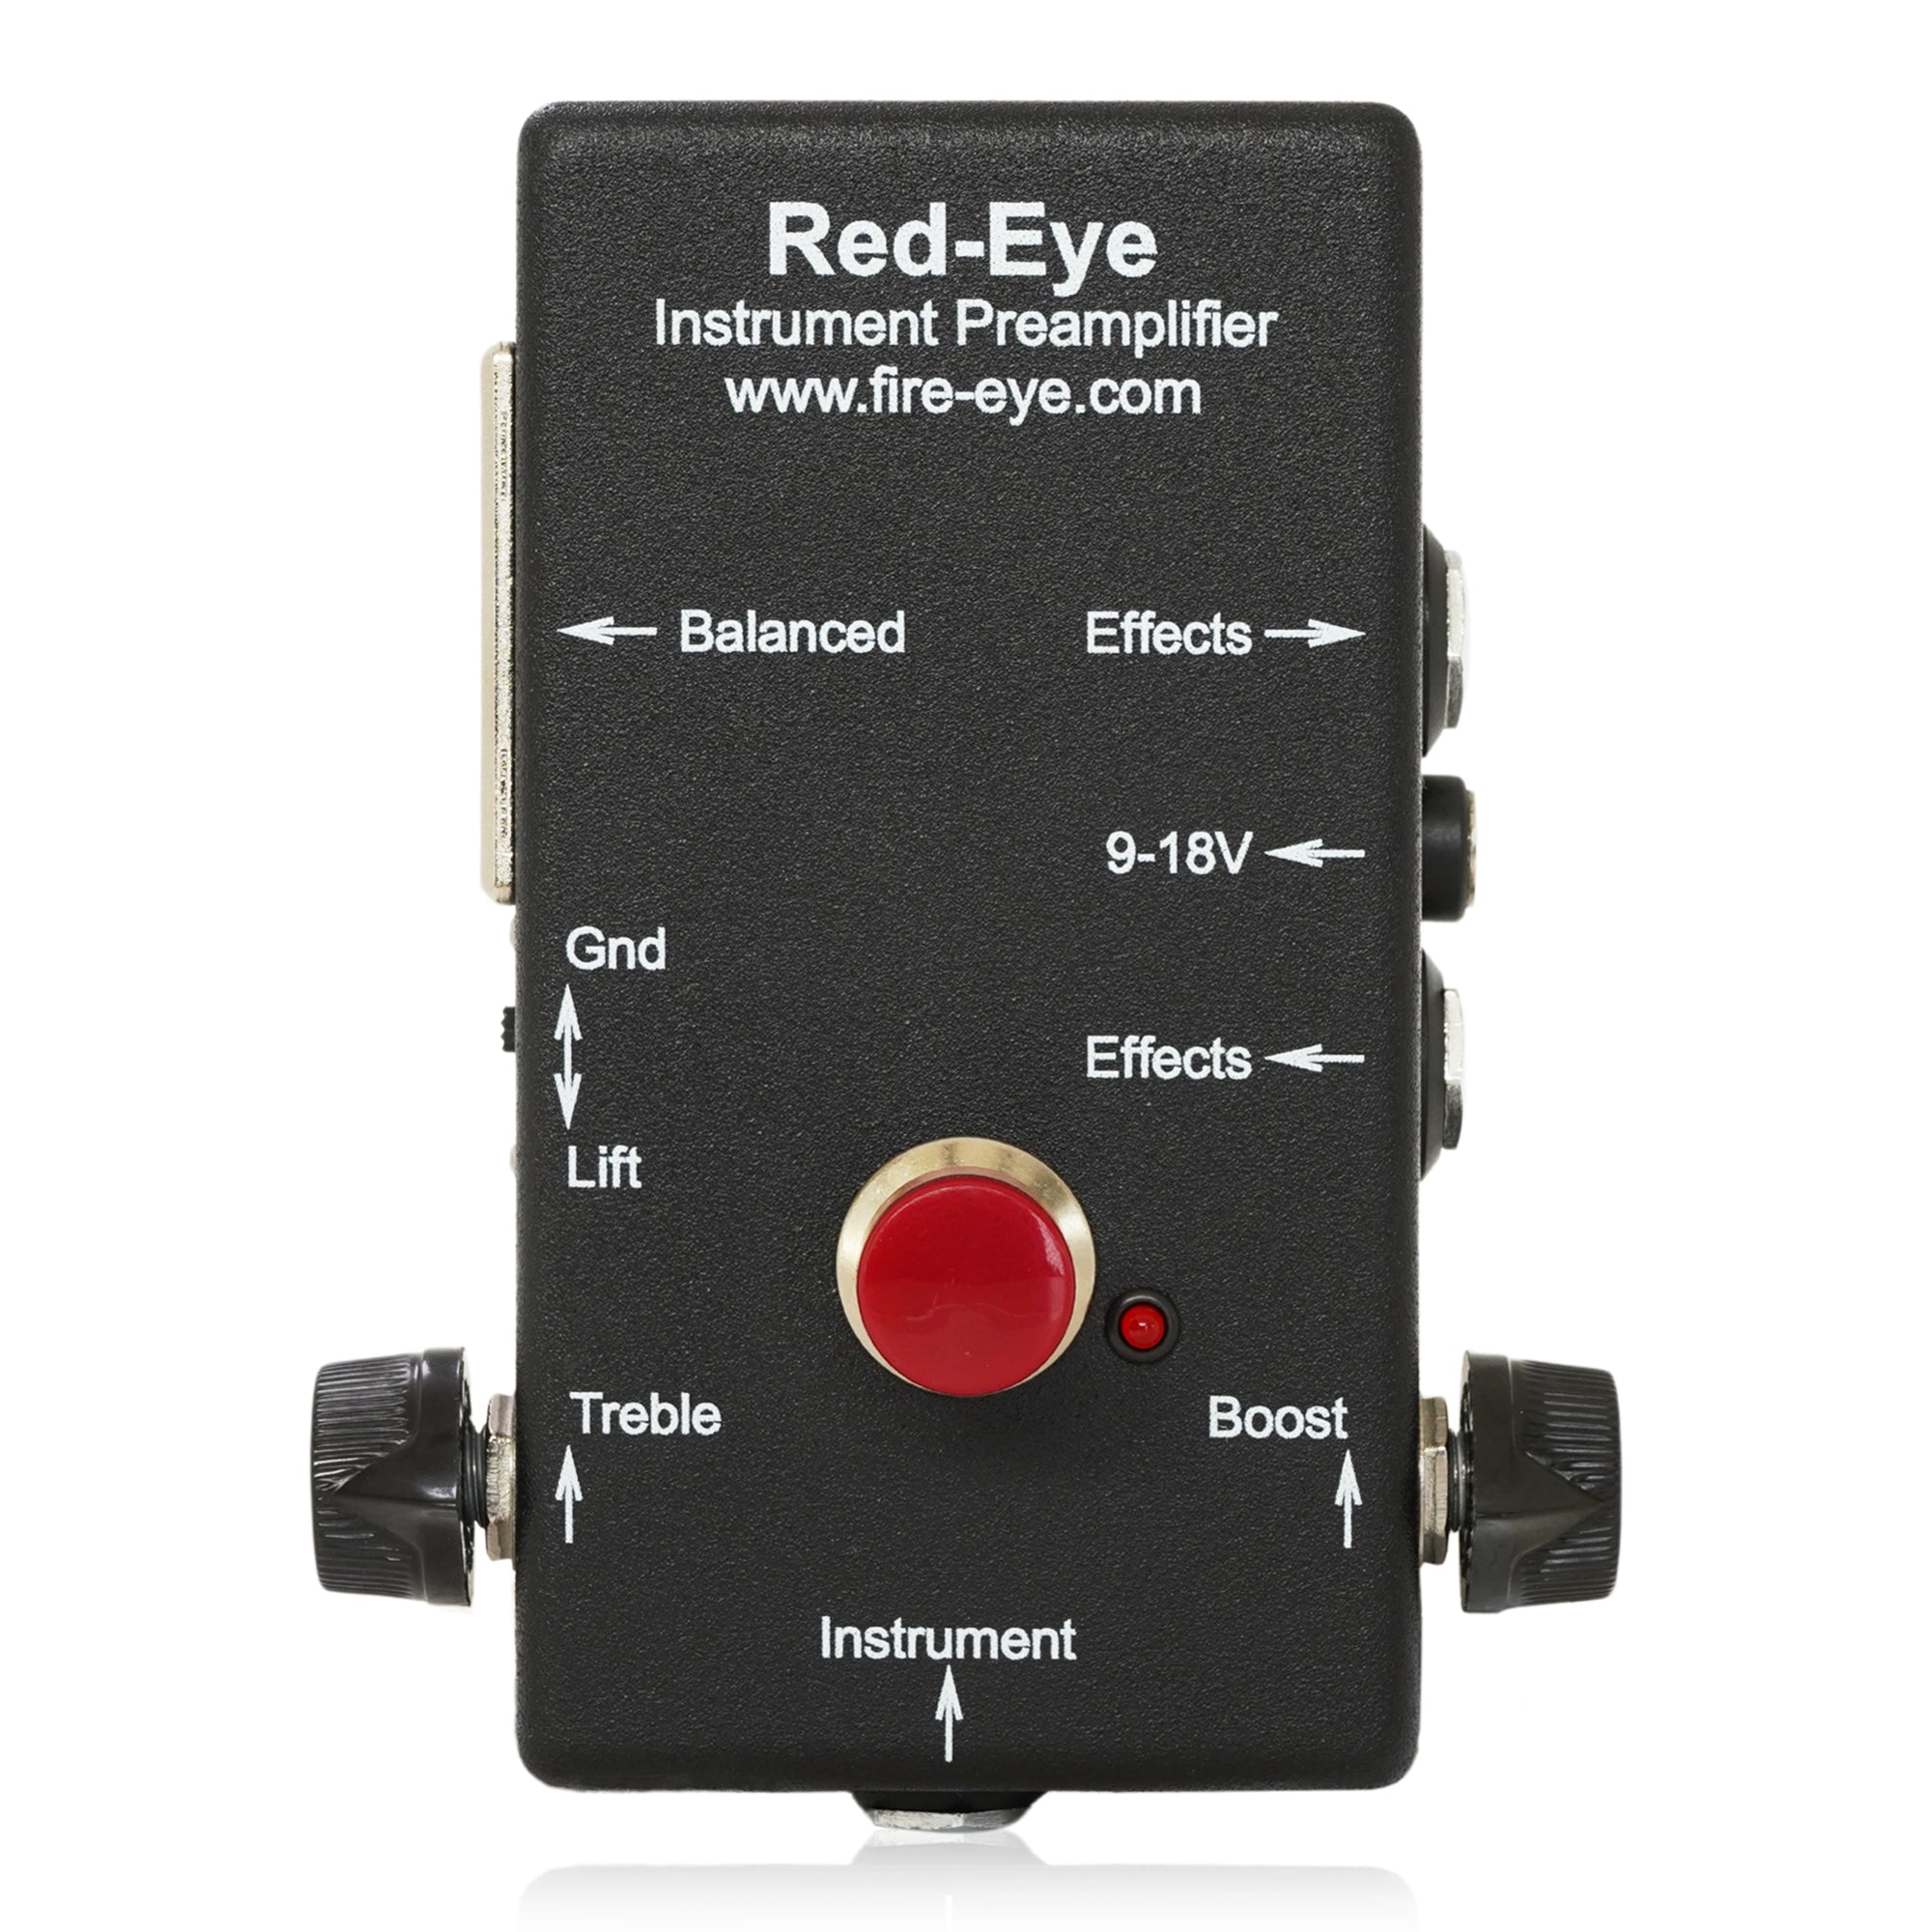 Fire-Eye/Red-Eye Instrument Preamplifier – LEP INTERNATIONAL